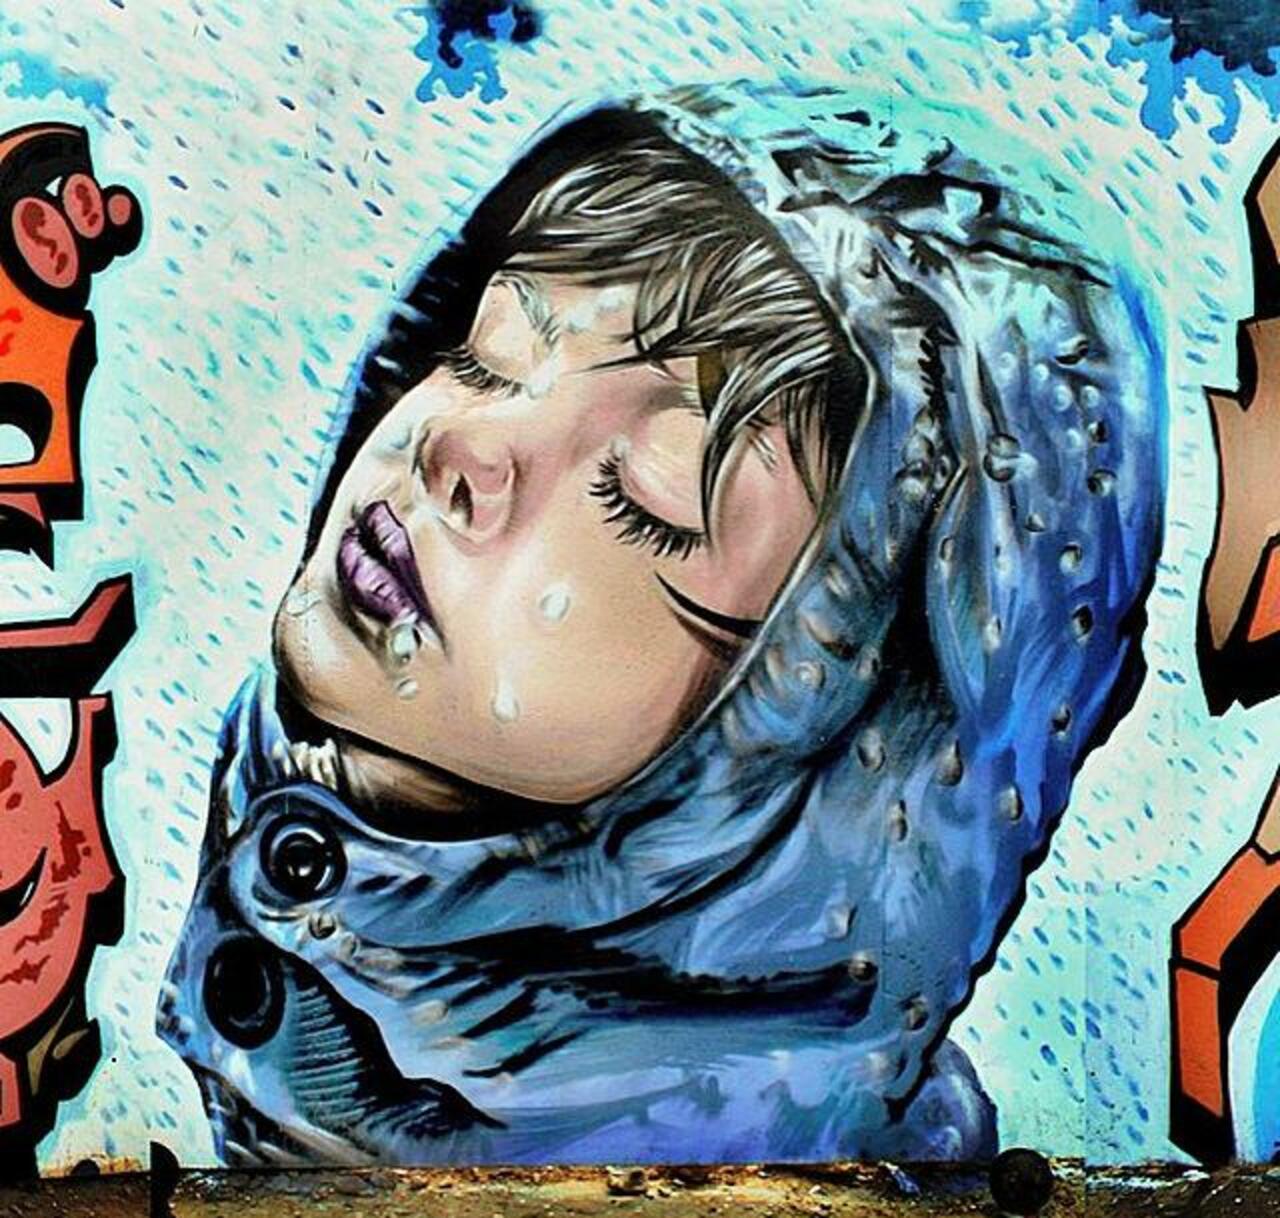 Street Art by the artist' Spooksoistreet' titled 'Raindrops' 

#art #arte #graffiti #streetart http://t.co/K6KYug7g7Q